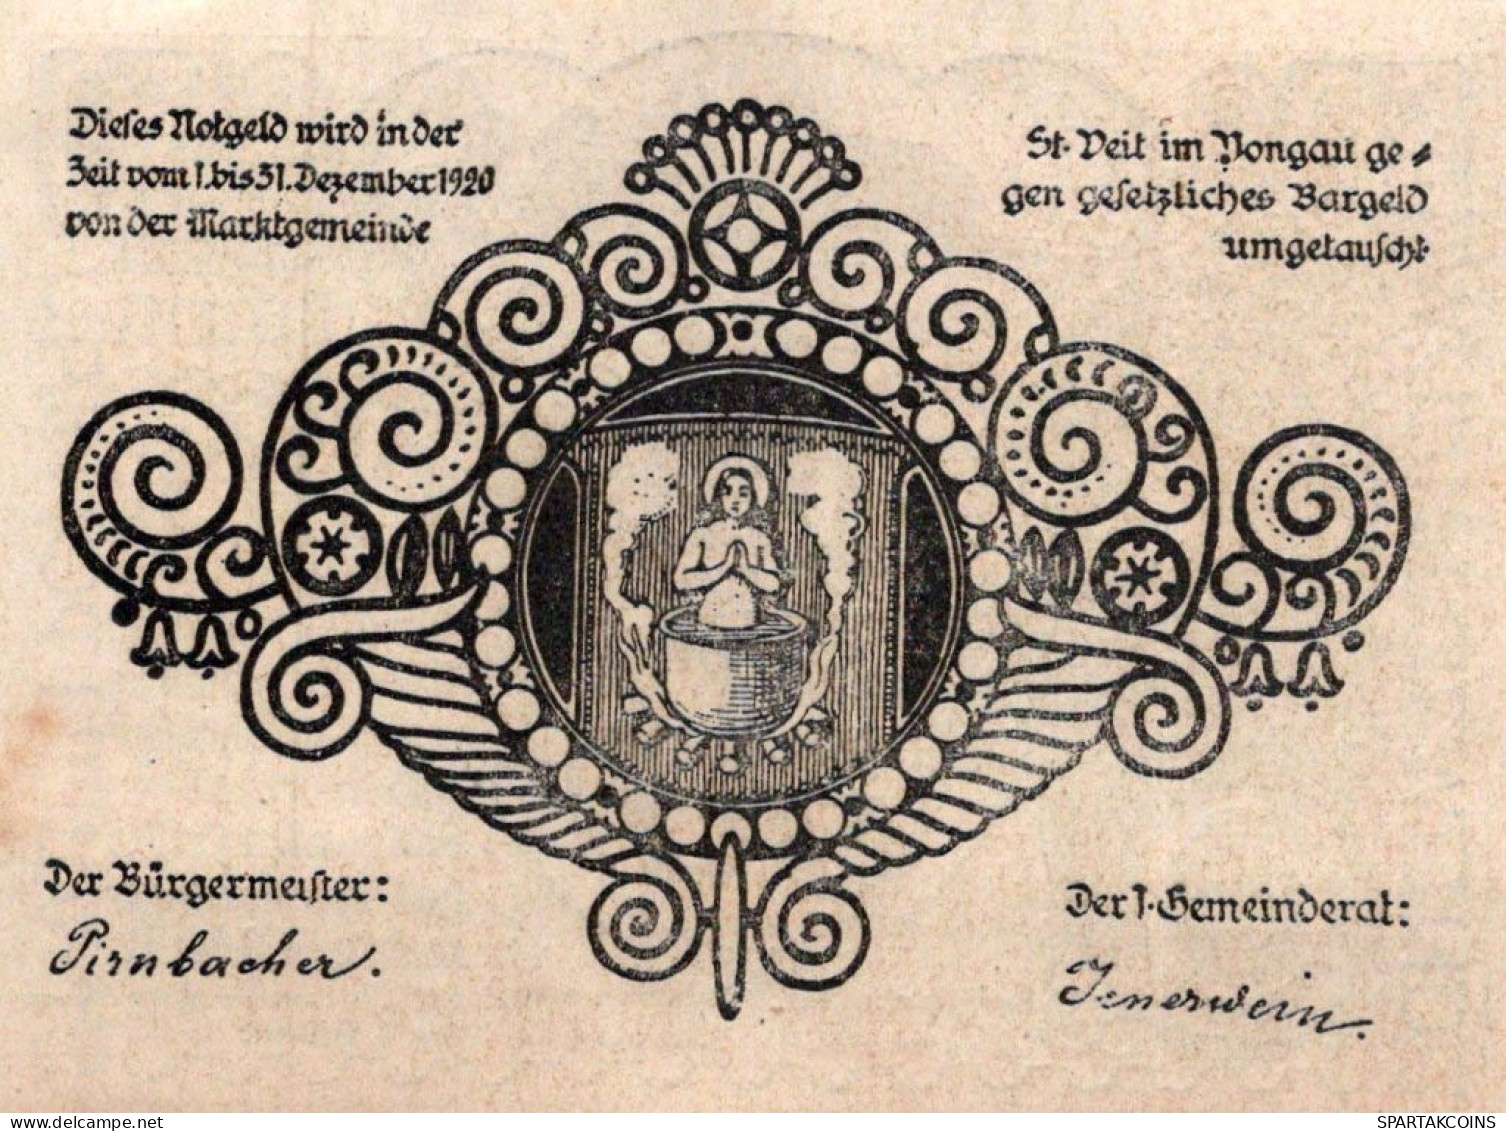 50 HELLER 1920 Stadt SANKT VEIT IM PONGAU Salzburg Österreich Notgeld Papiergeld Banknote #PG696 - [11] Local Banknote Issues